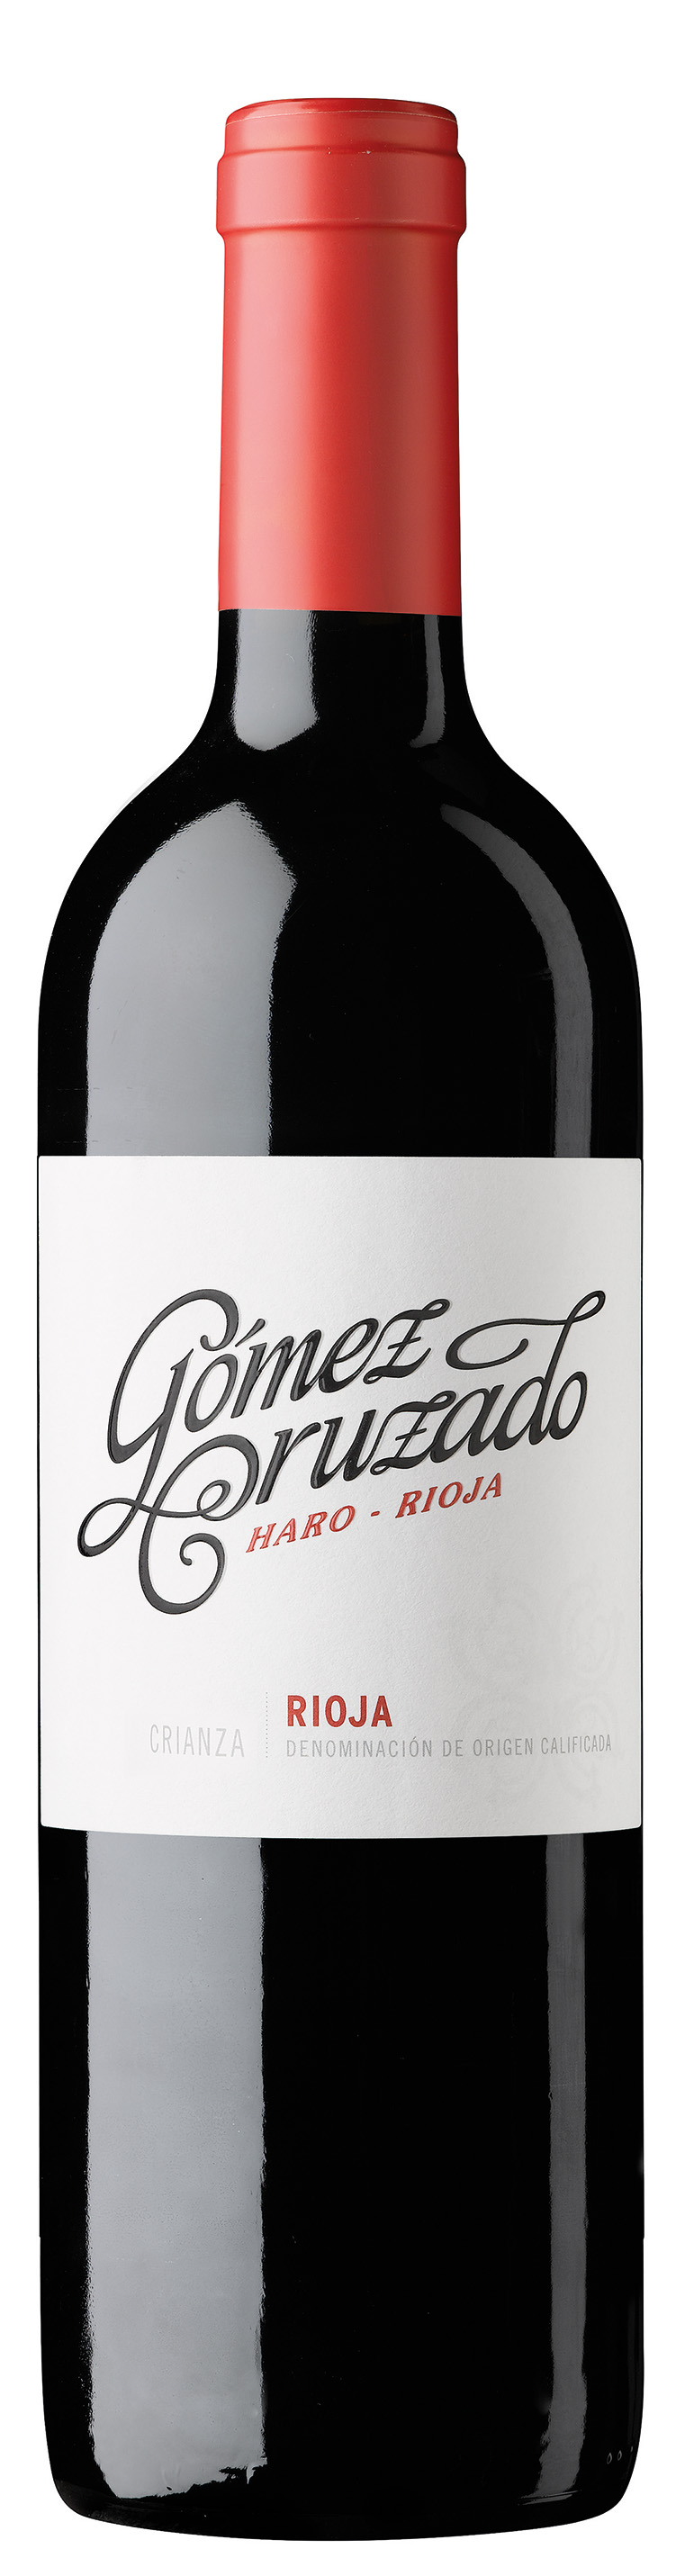 Crianza Gomez Cruzado Rioja DOCa 2020